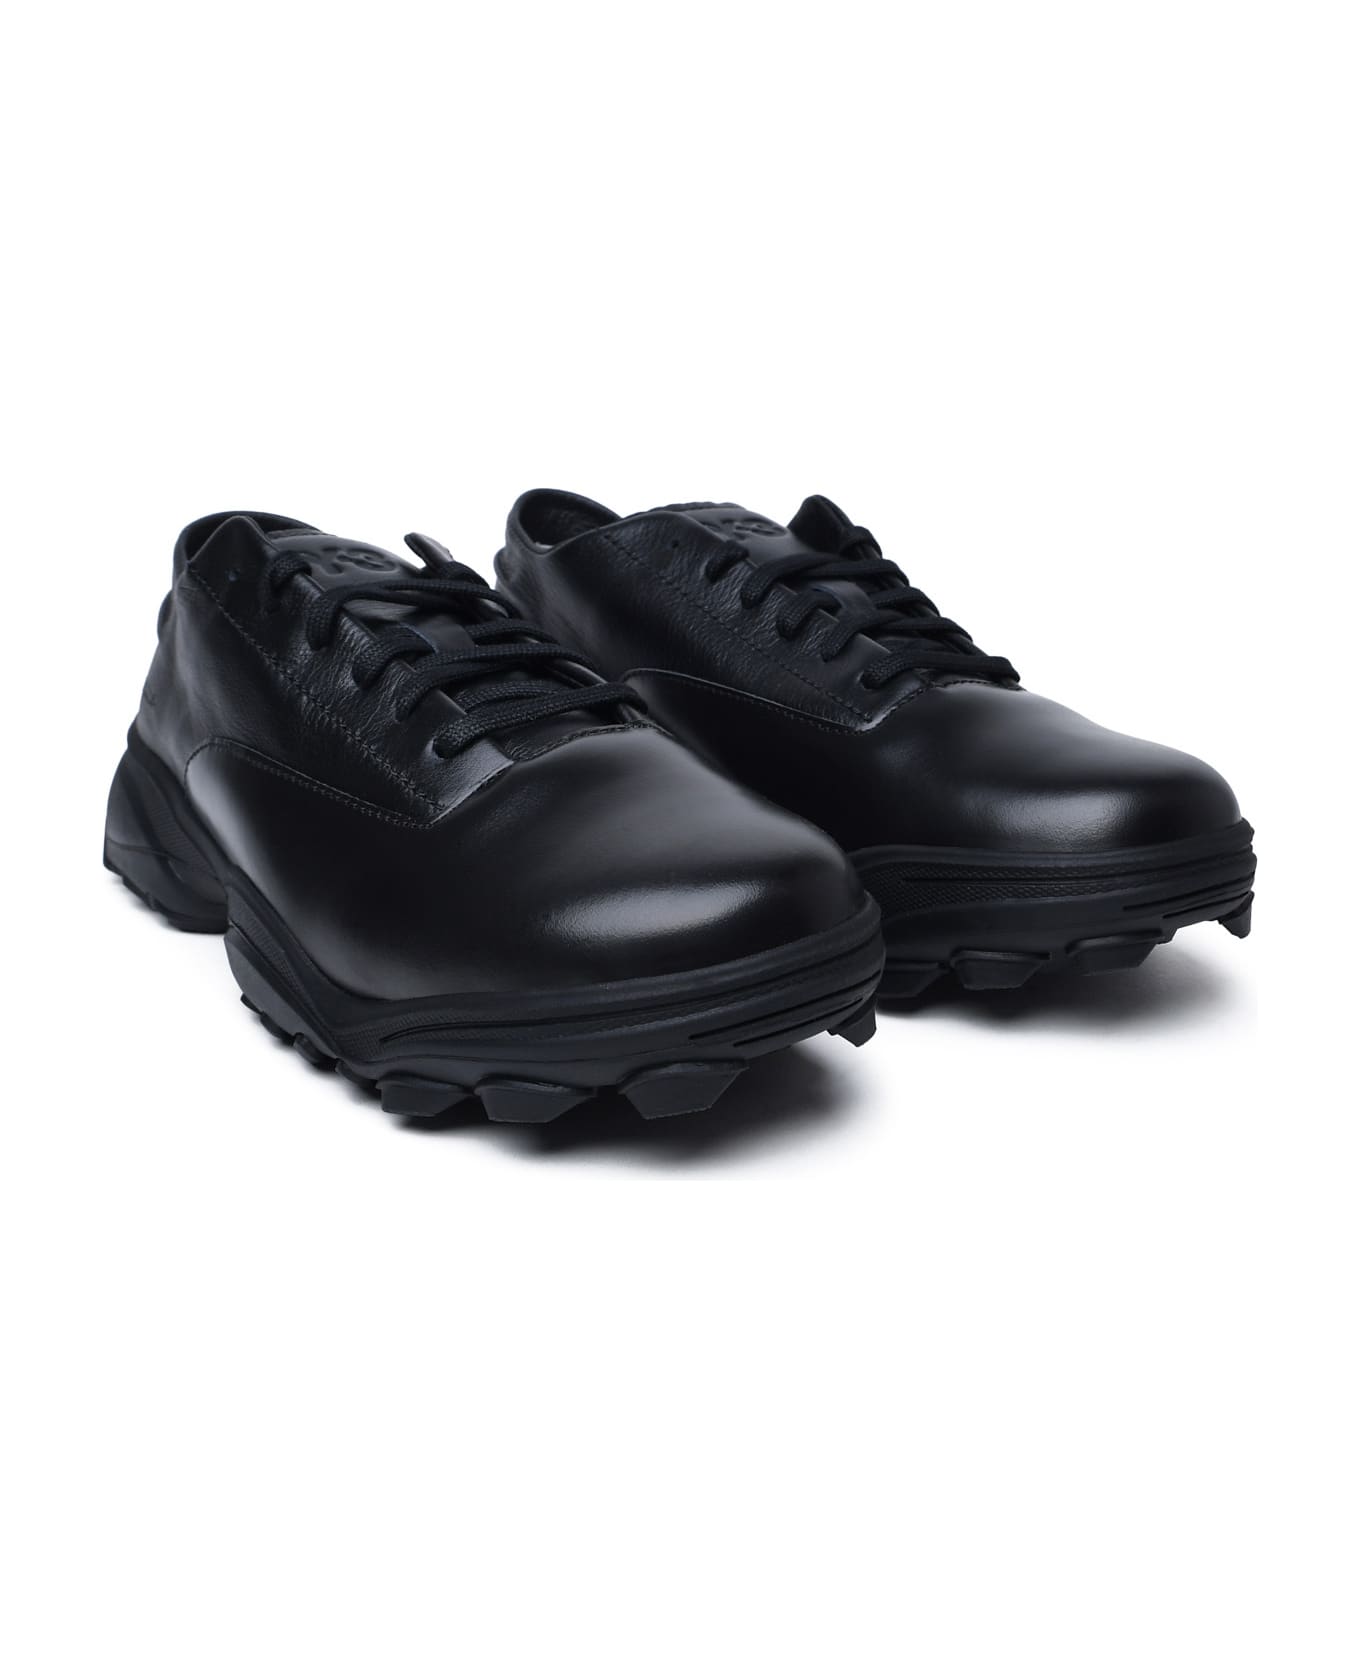 Y-3 Black Leather Sneakers - Black